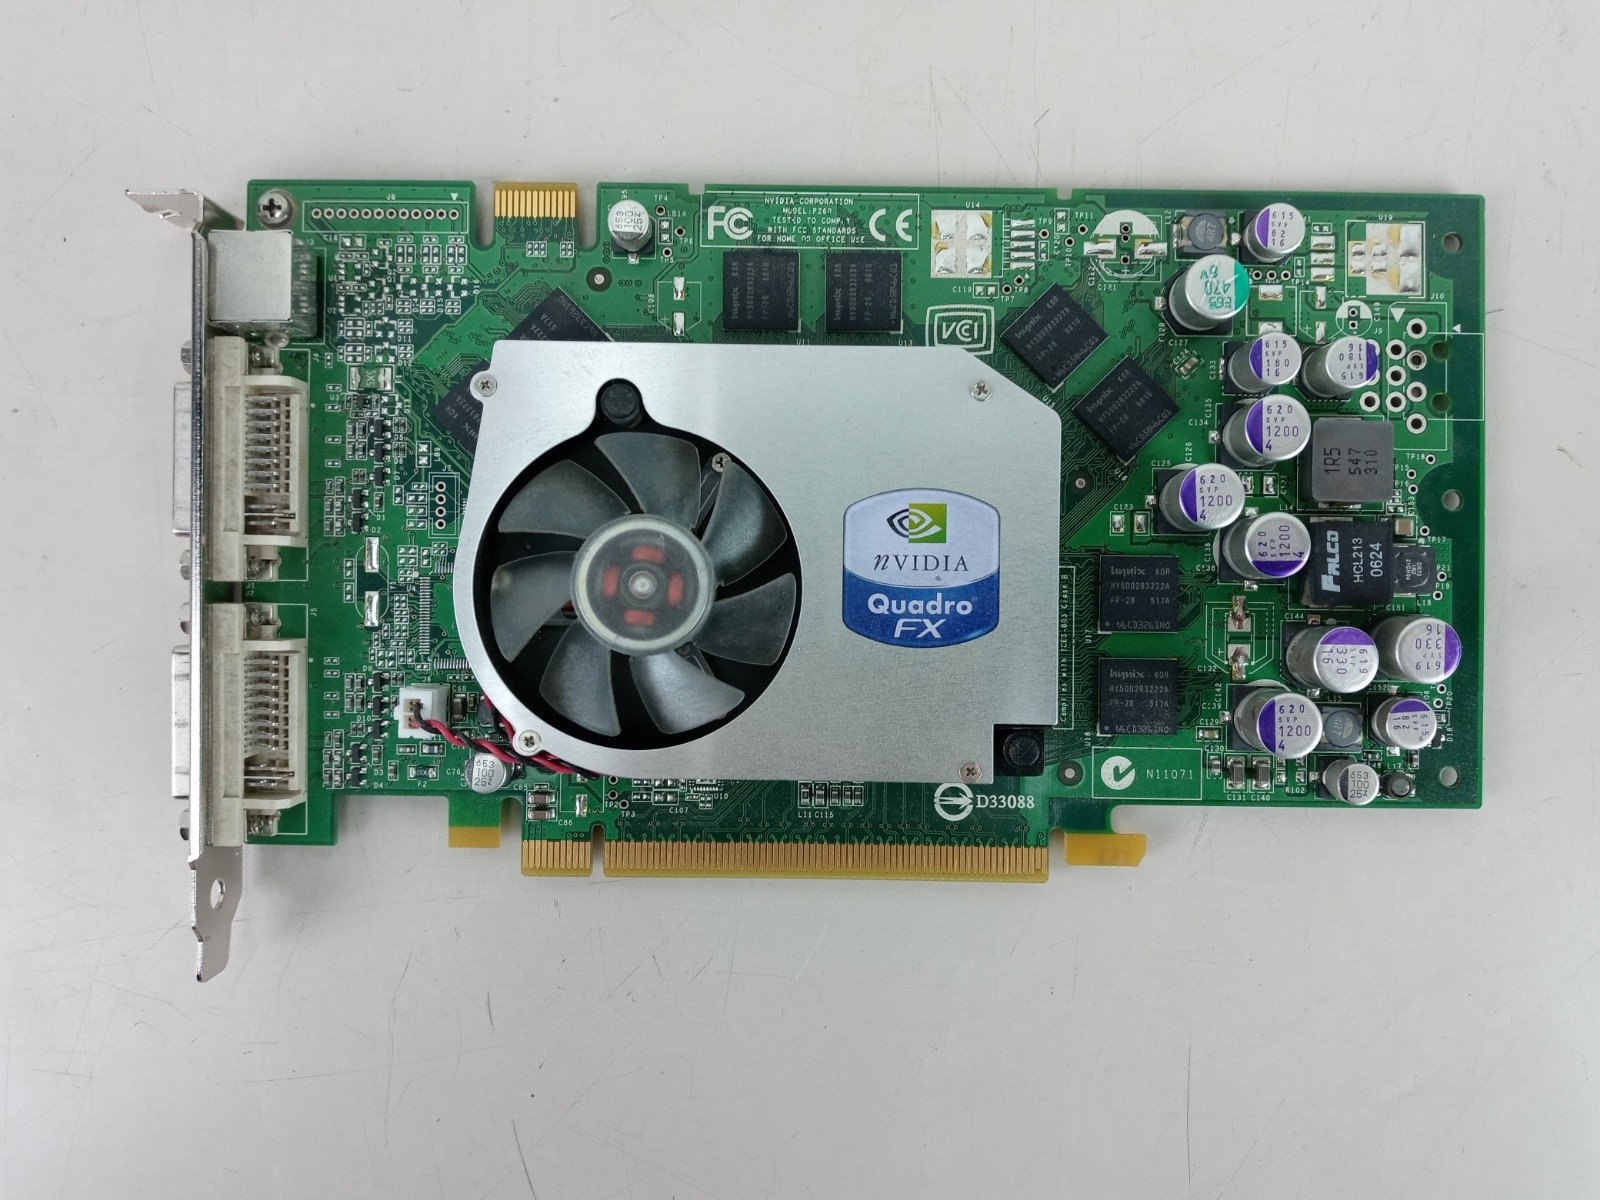 Nvidia Quadro FX 1400 Graphics Card - Tested